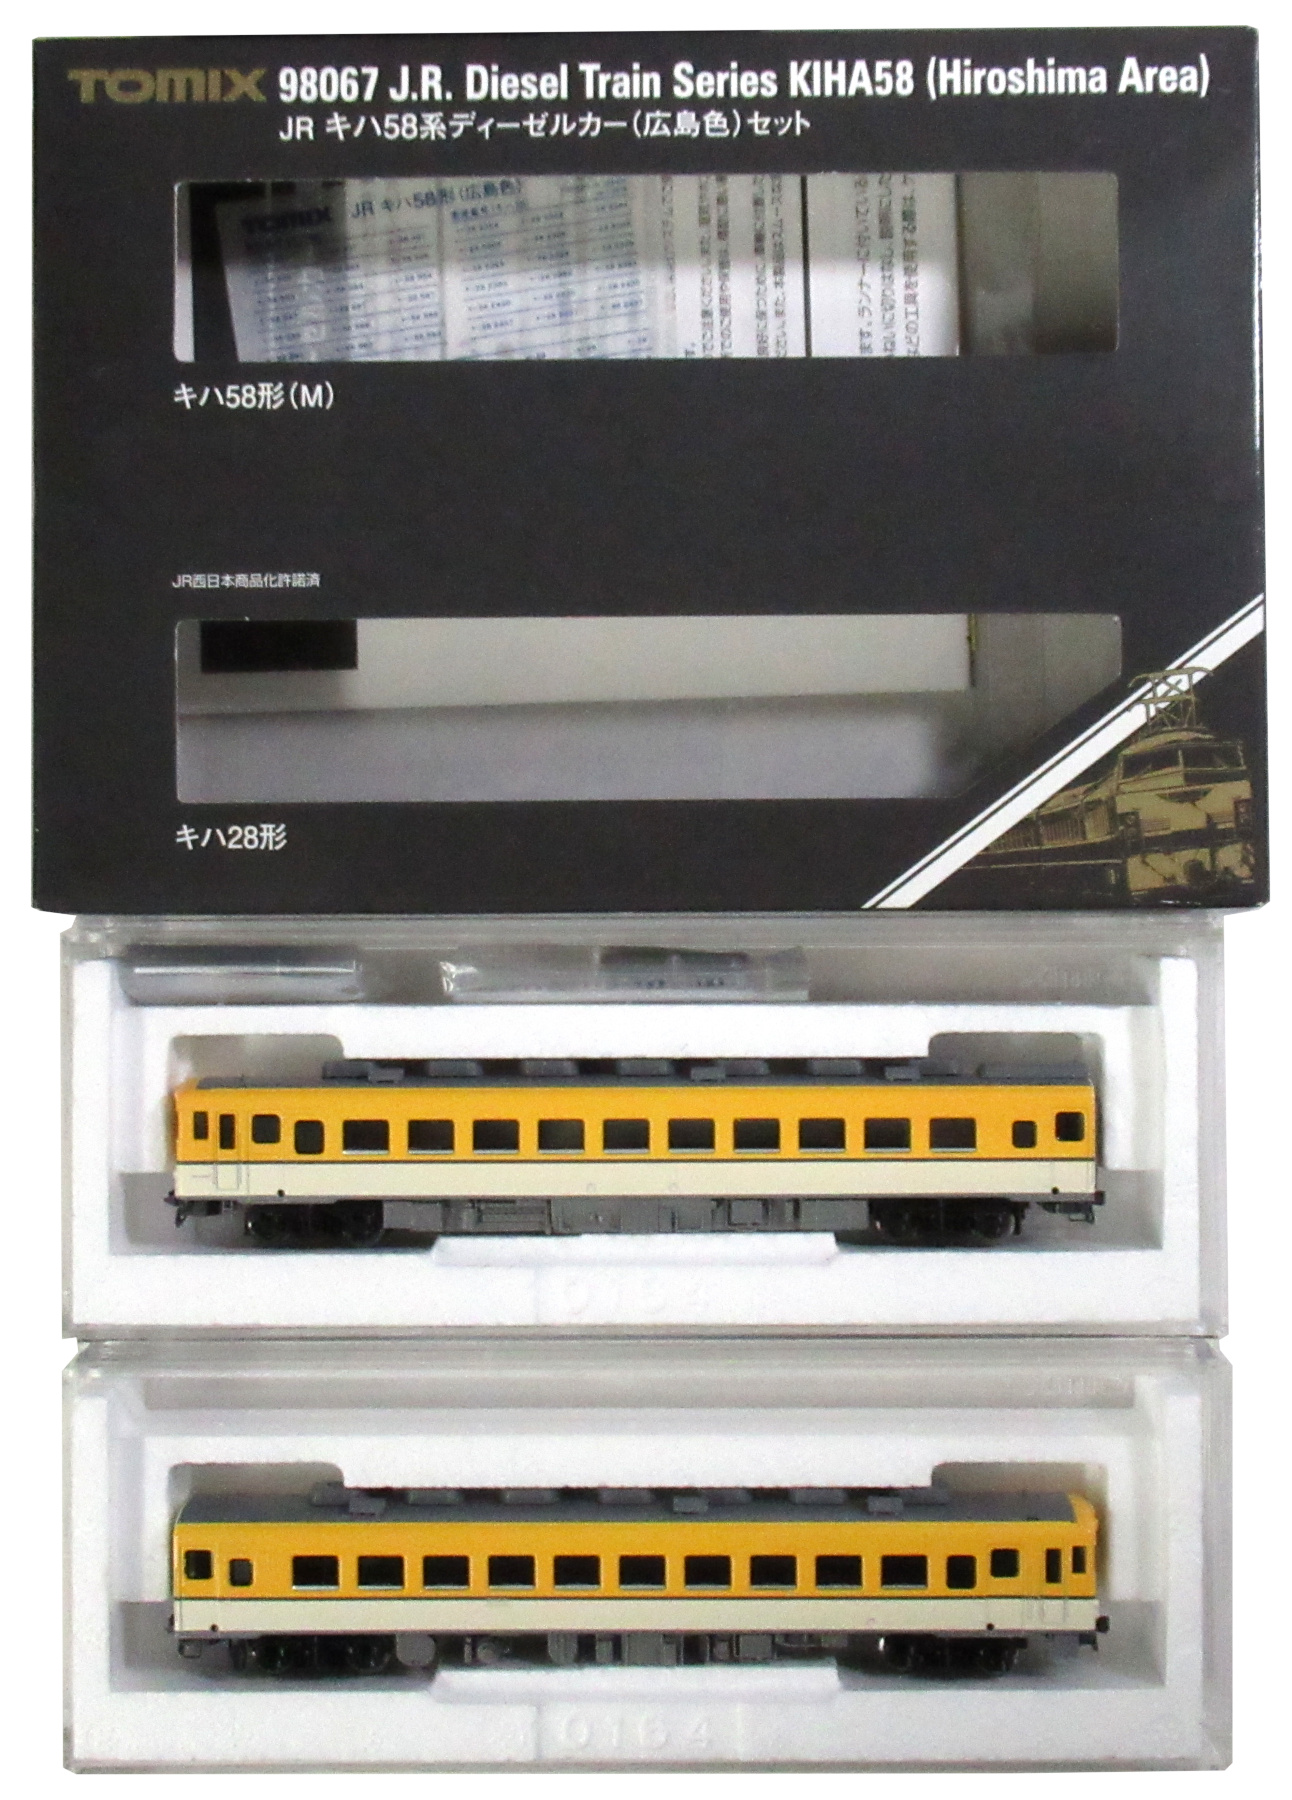 低価正規店92244 JR キハ58系ディーゼルカー(広島色)セット(4両)(動力付き) Nゲージ 鉄道模型 TOMIX(トミックス) ディーゼルカー